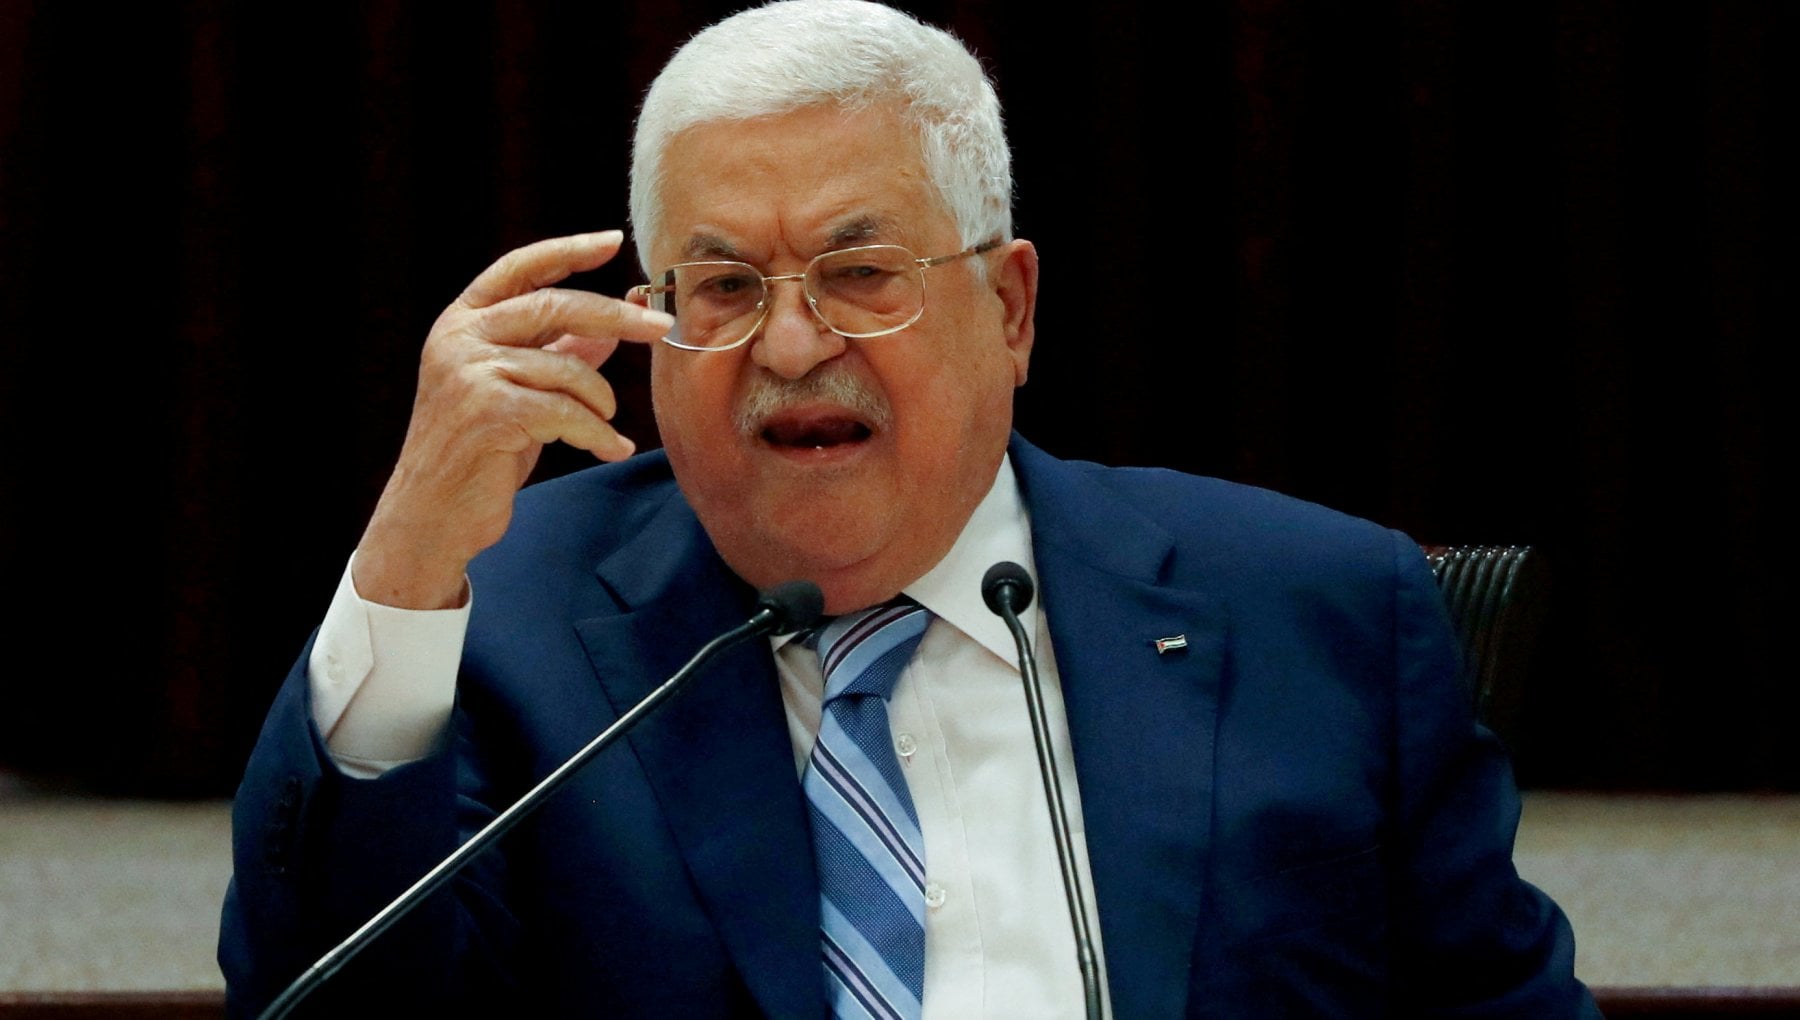 Abu Mazen e l'Olp entusiasti per il riconoscimento dello Stato di Palestina di Spagna, Norvegia e Irlanda